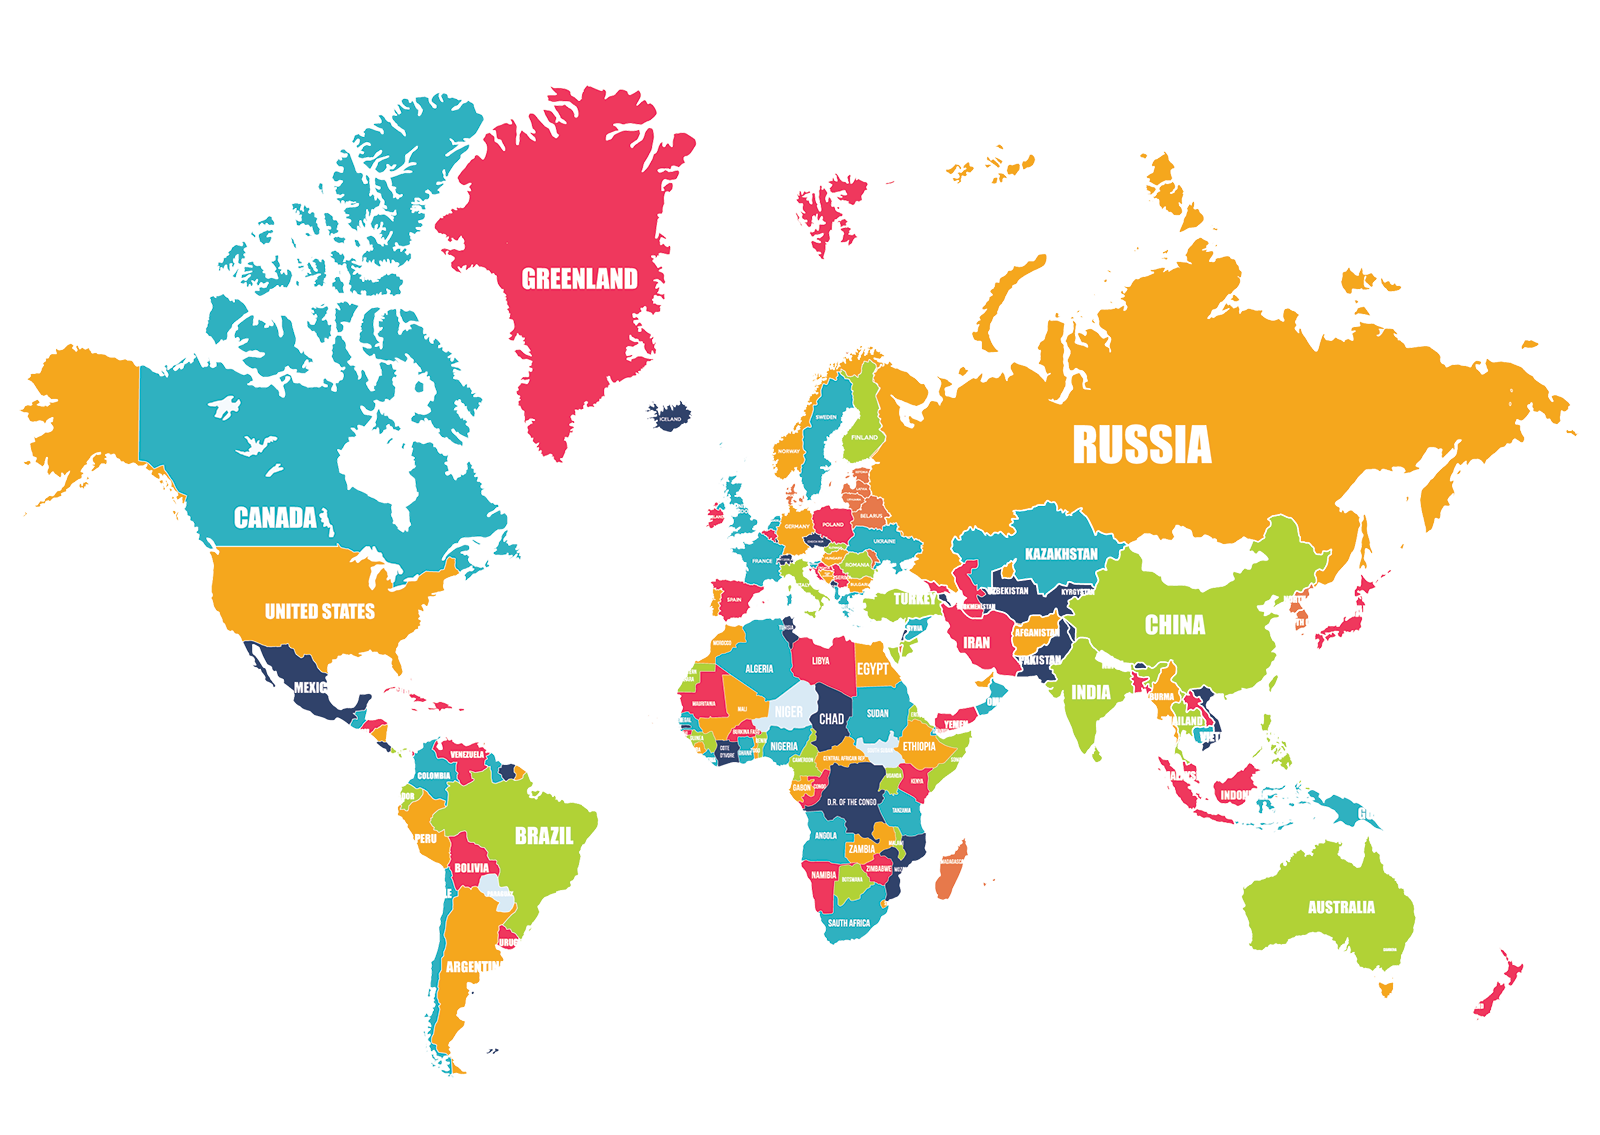 harta lumii